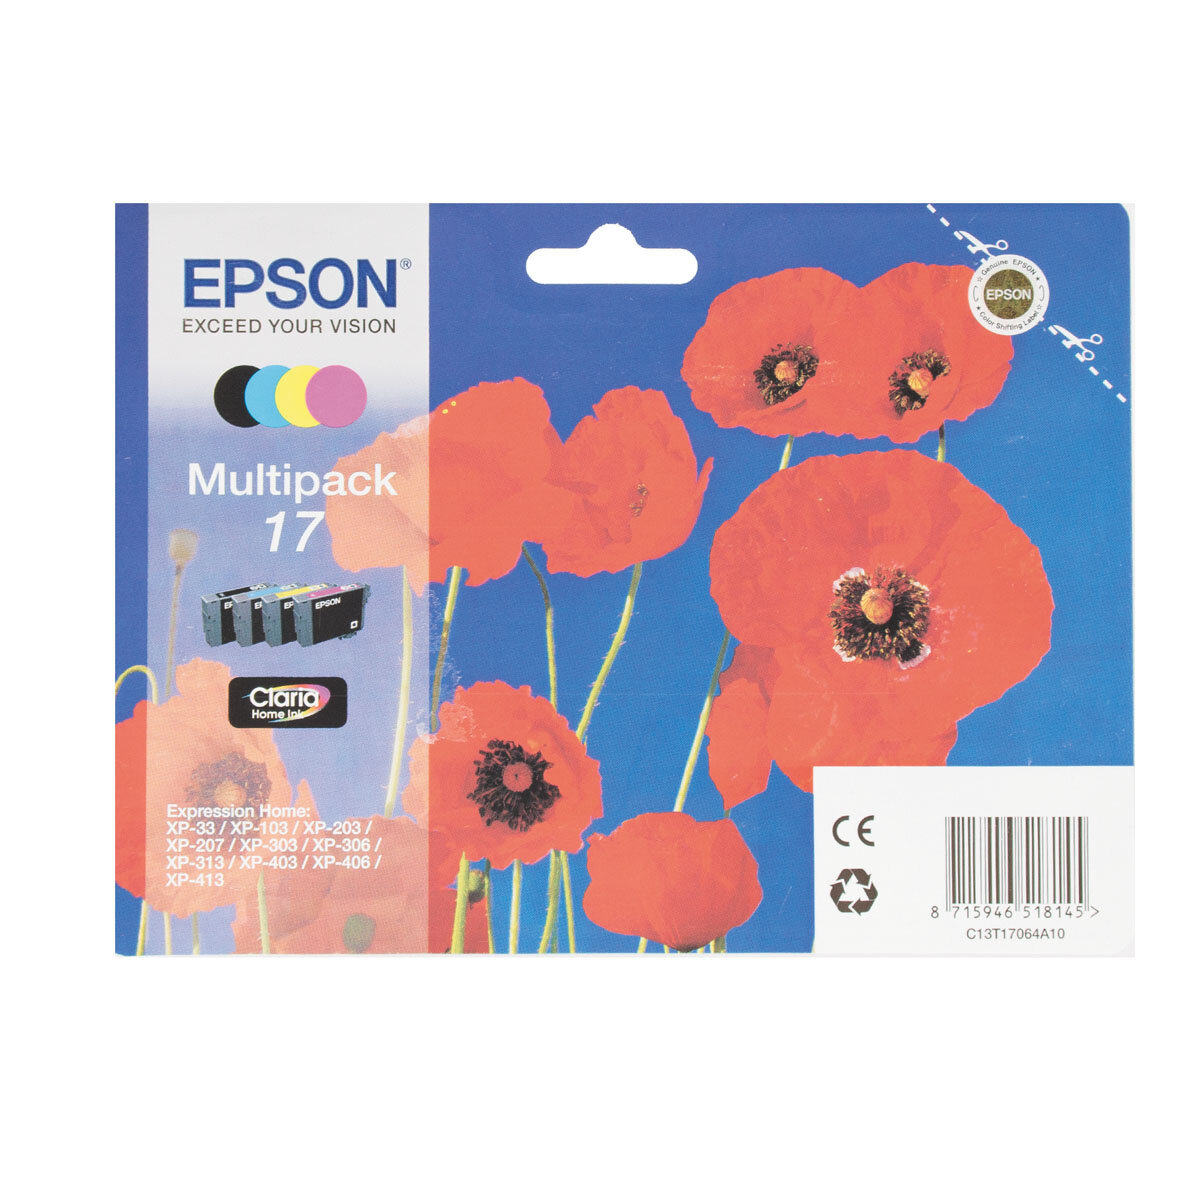 Комплект картриджей Epson C13T17064A10, многоцветный